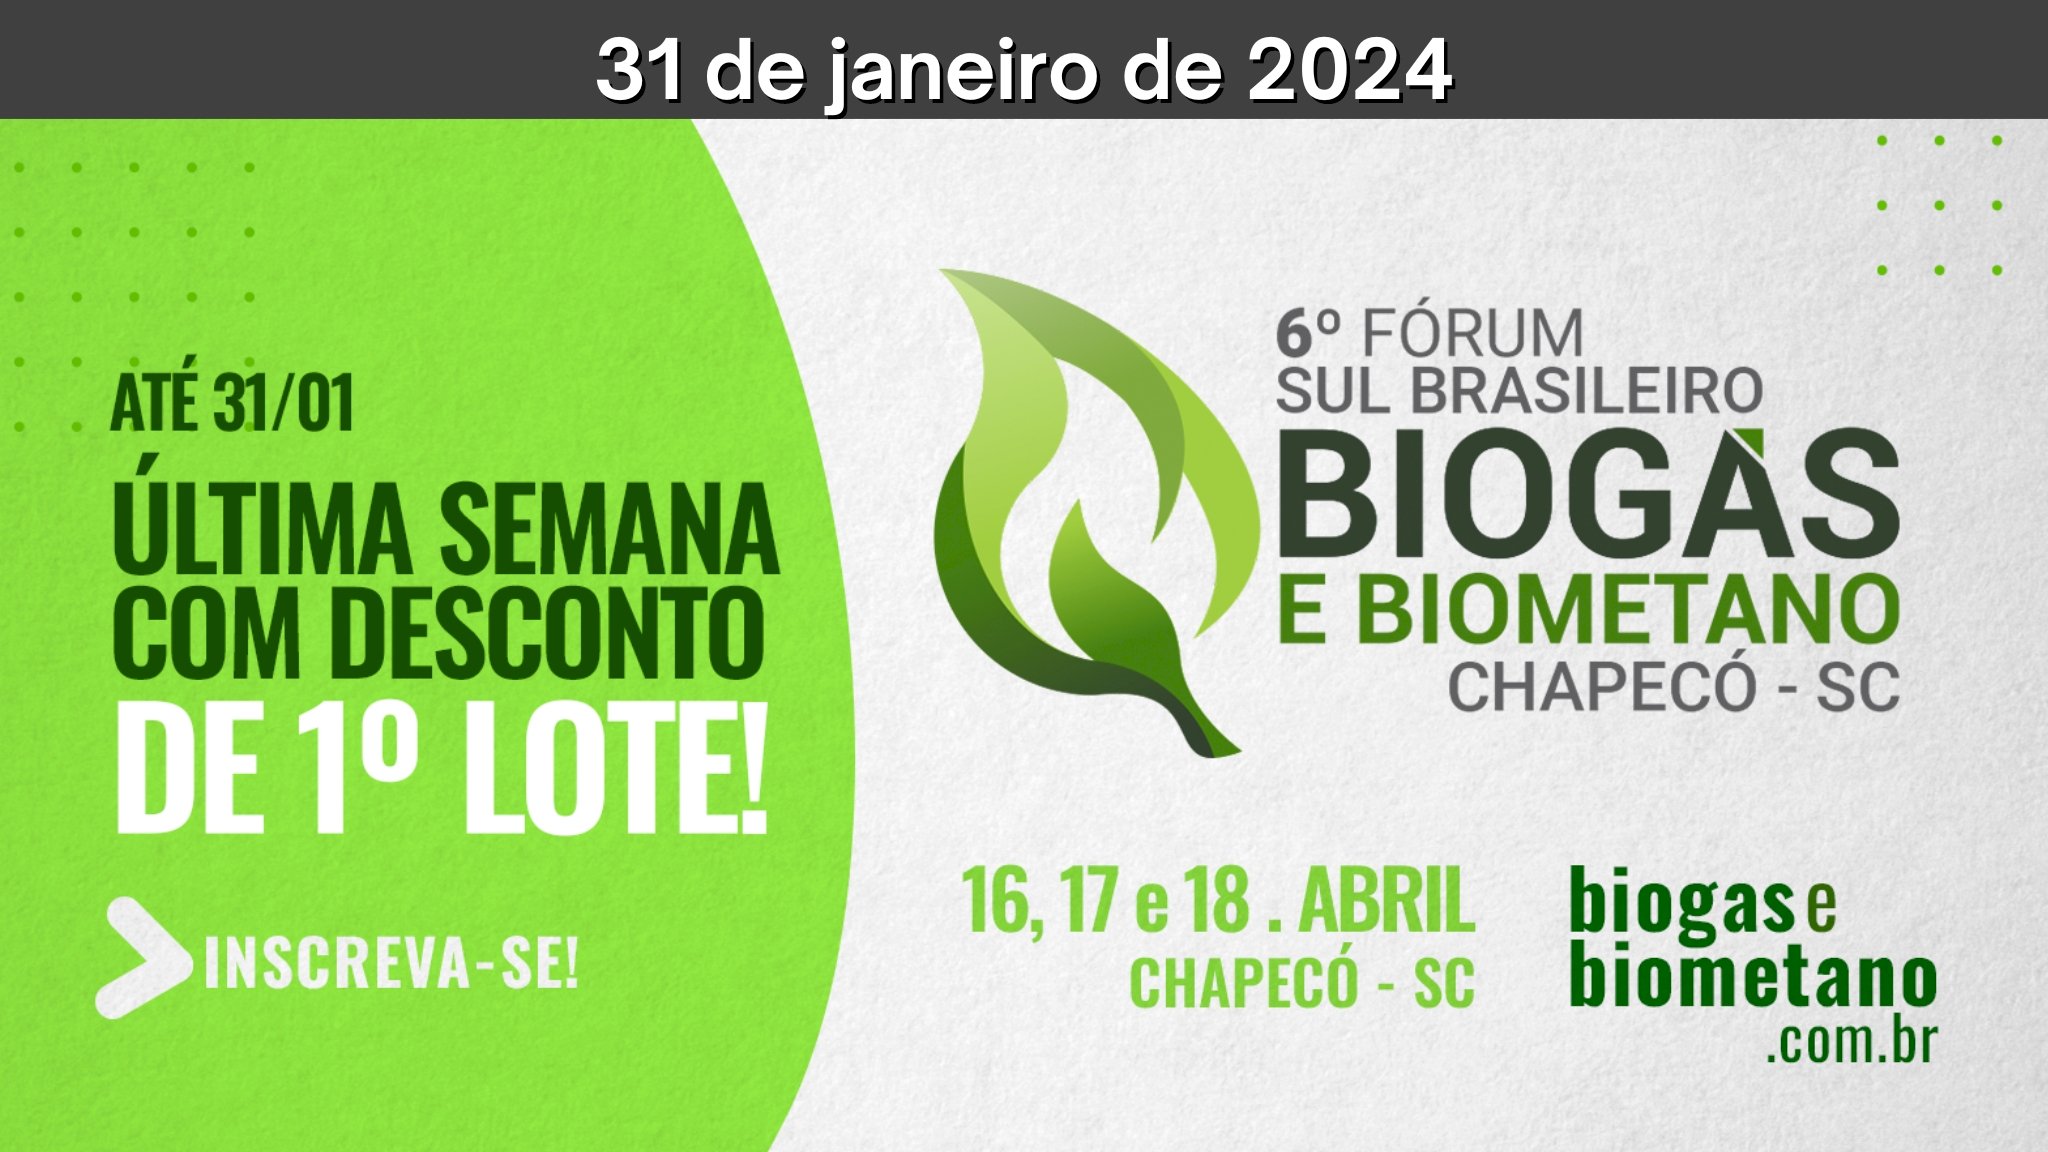 6° Fórum Sul Brasileiro de Biogás e Biometano - inscrições no lote 1 (até 31/01)